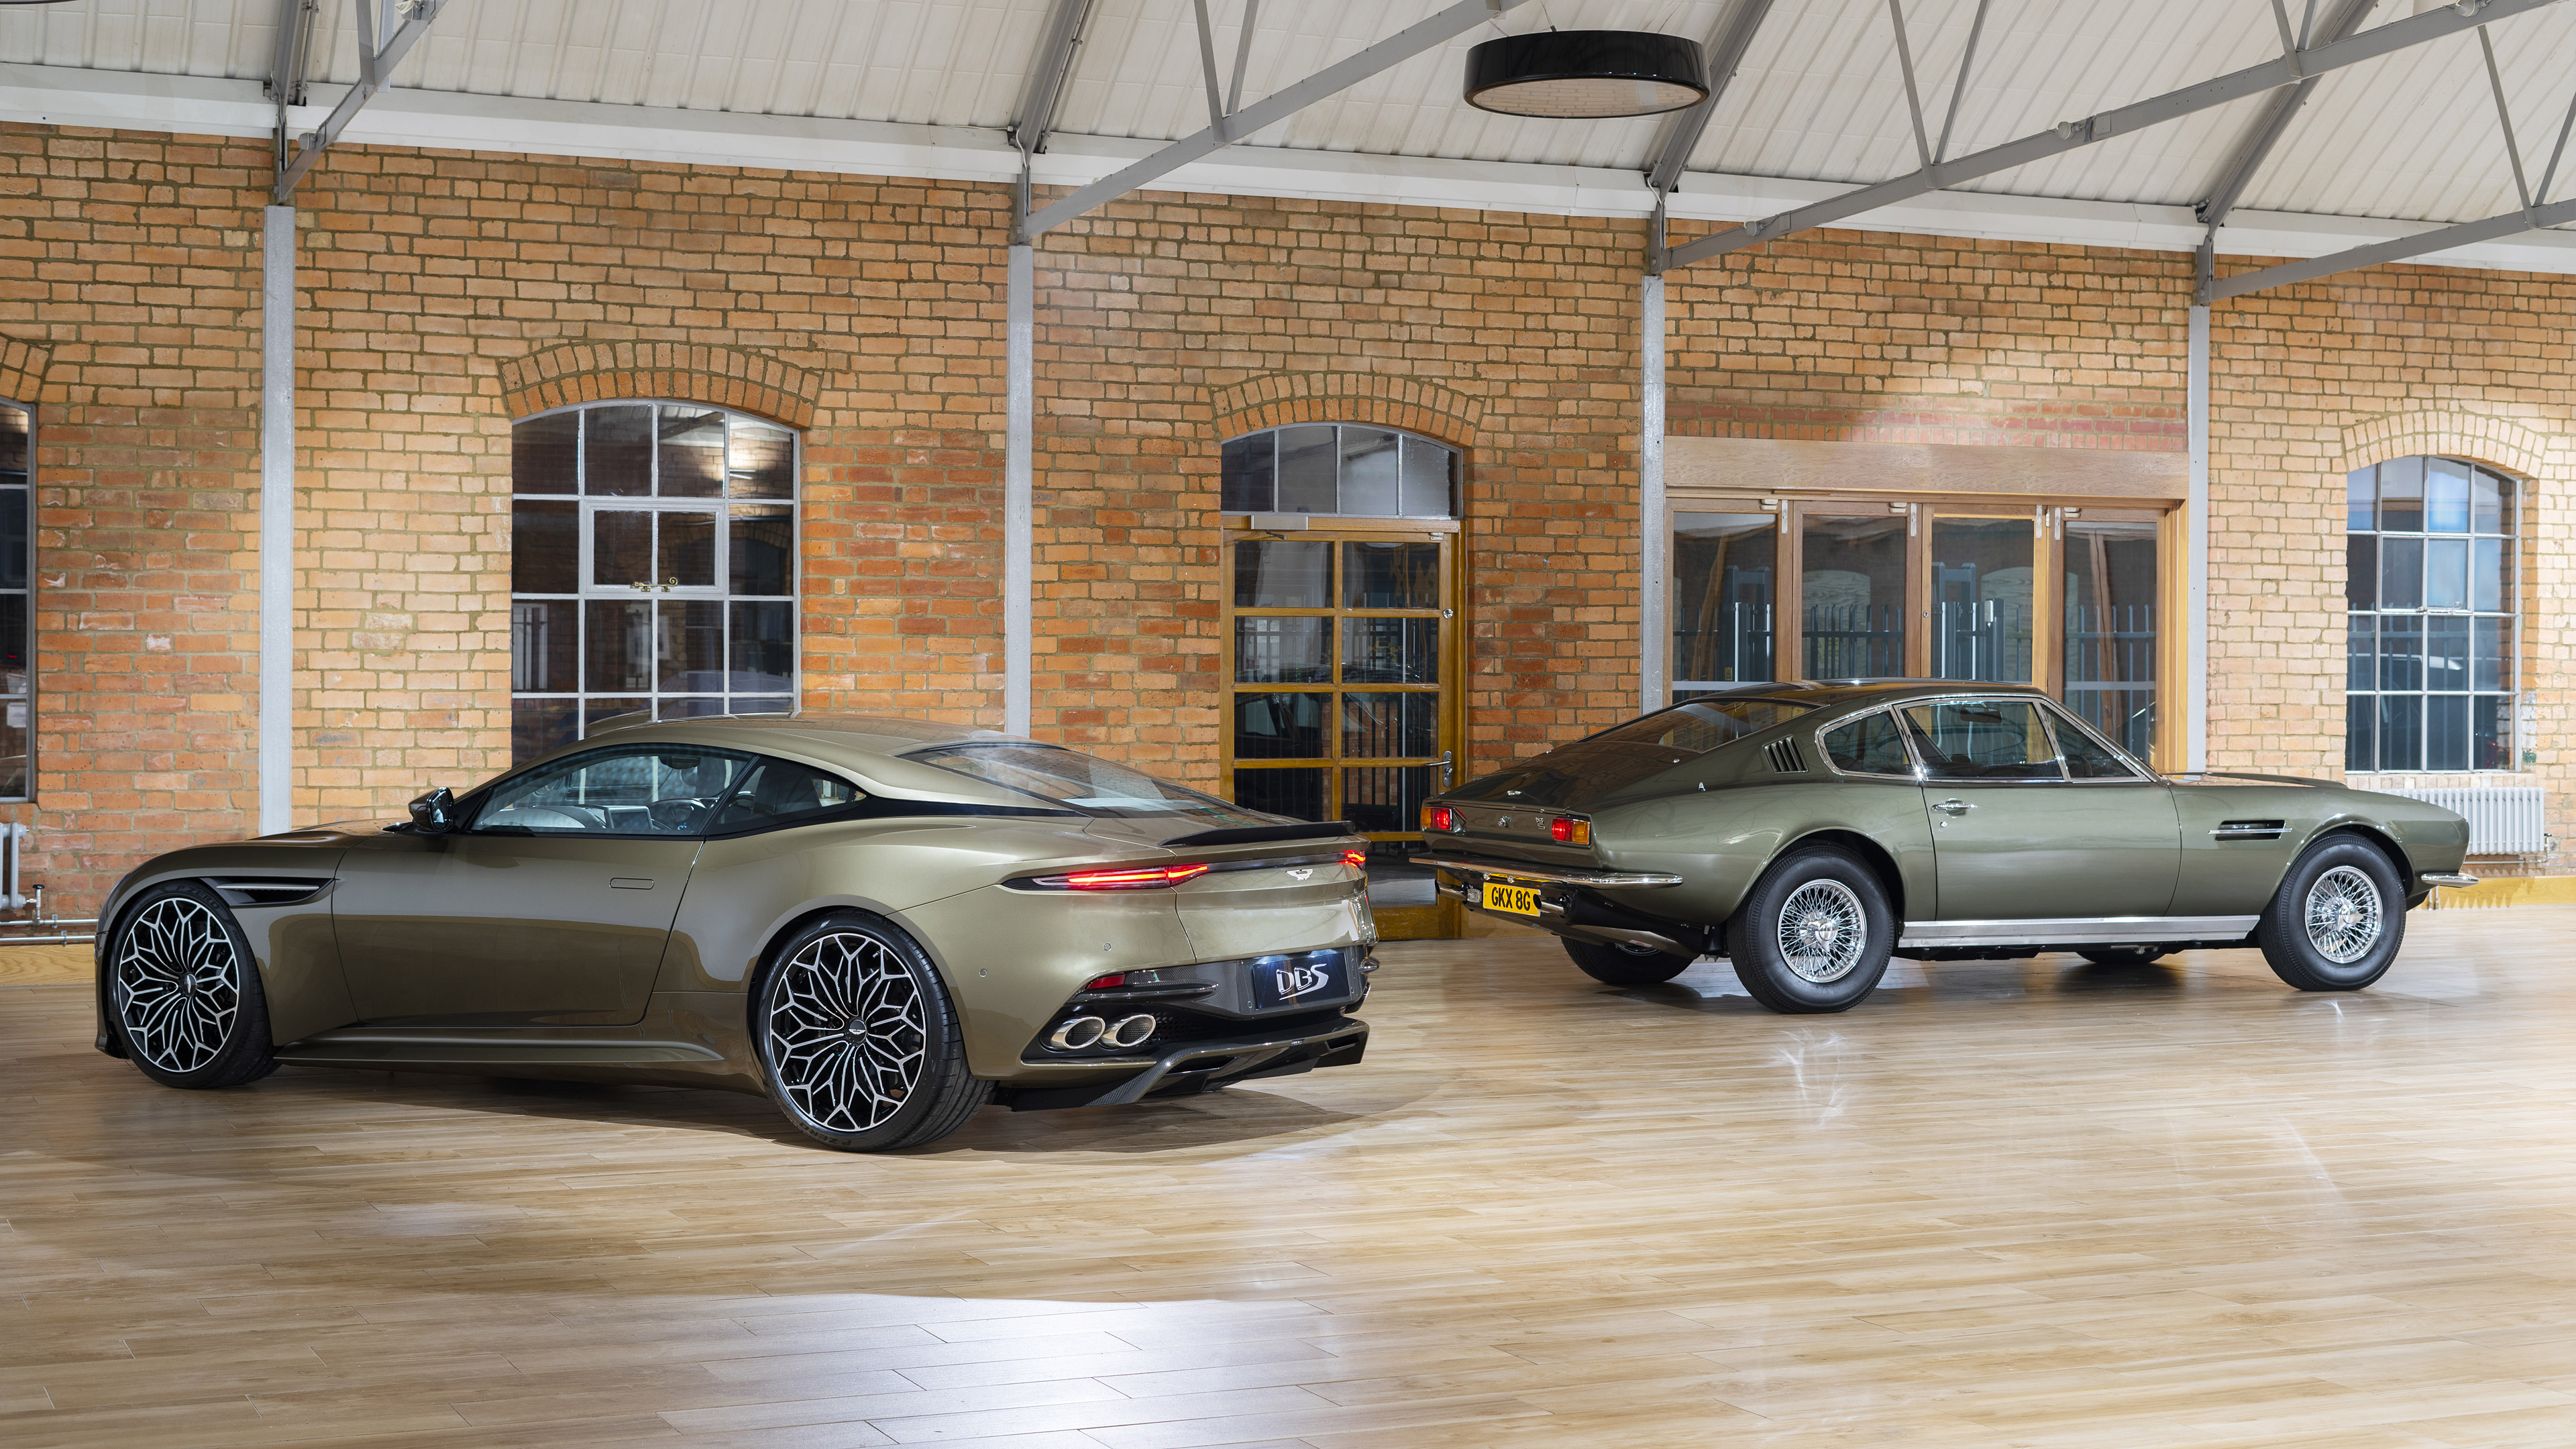 2019 Aston Martin DBS Superleggera OHMSS Edition & 1969 Aston Martin DBS